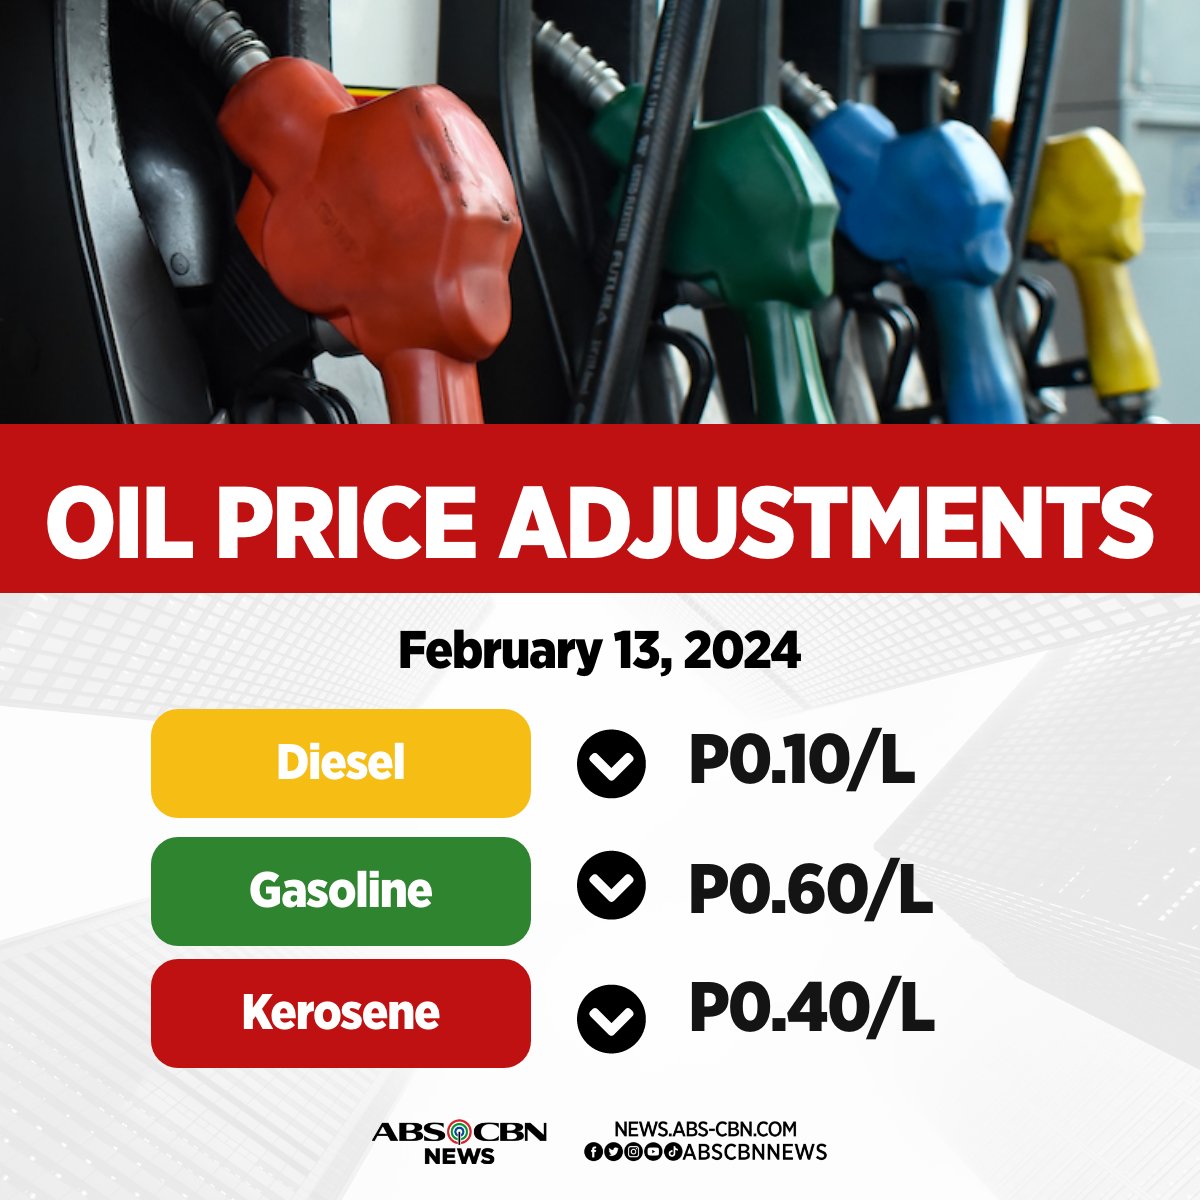 Good news sa mga motorista! May bahagyang pagbaba sa presyo ng mga produktong petrolyo ngayong linggo. #PricePatrol 

BASAHIN: news.abs-cbn.com/business/2024/…